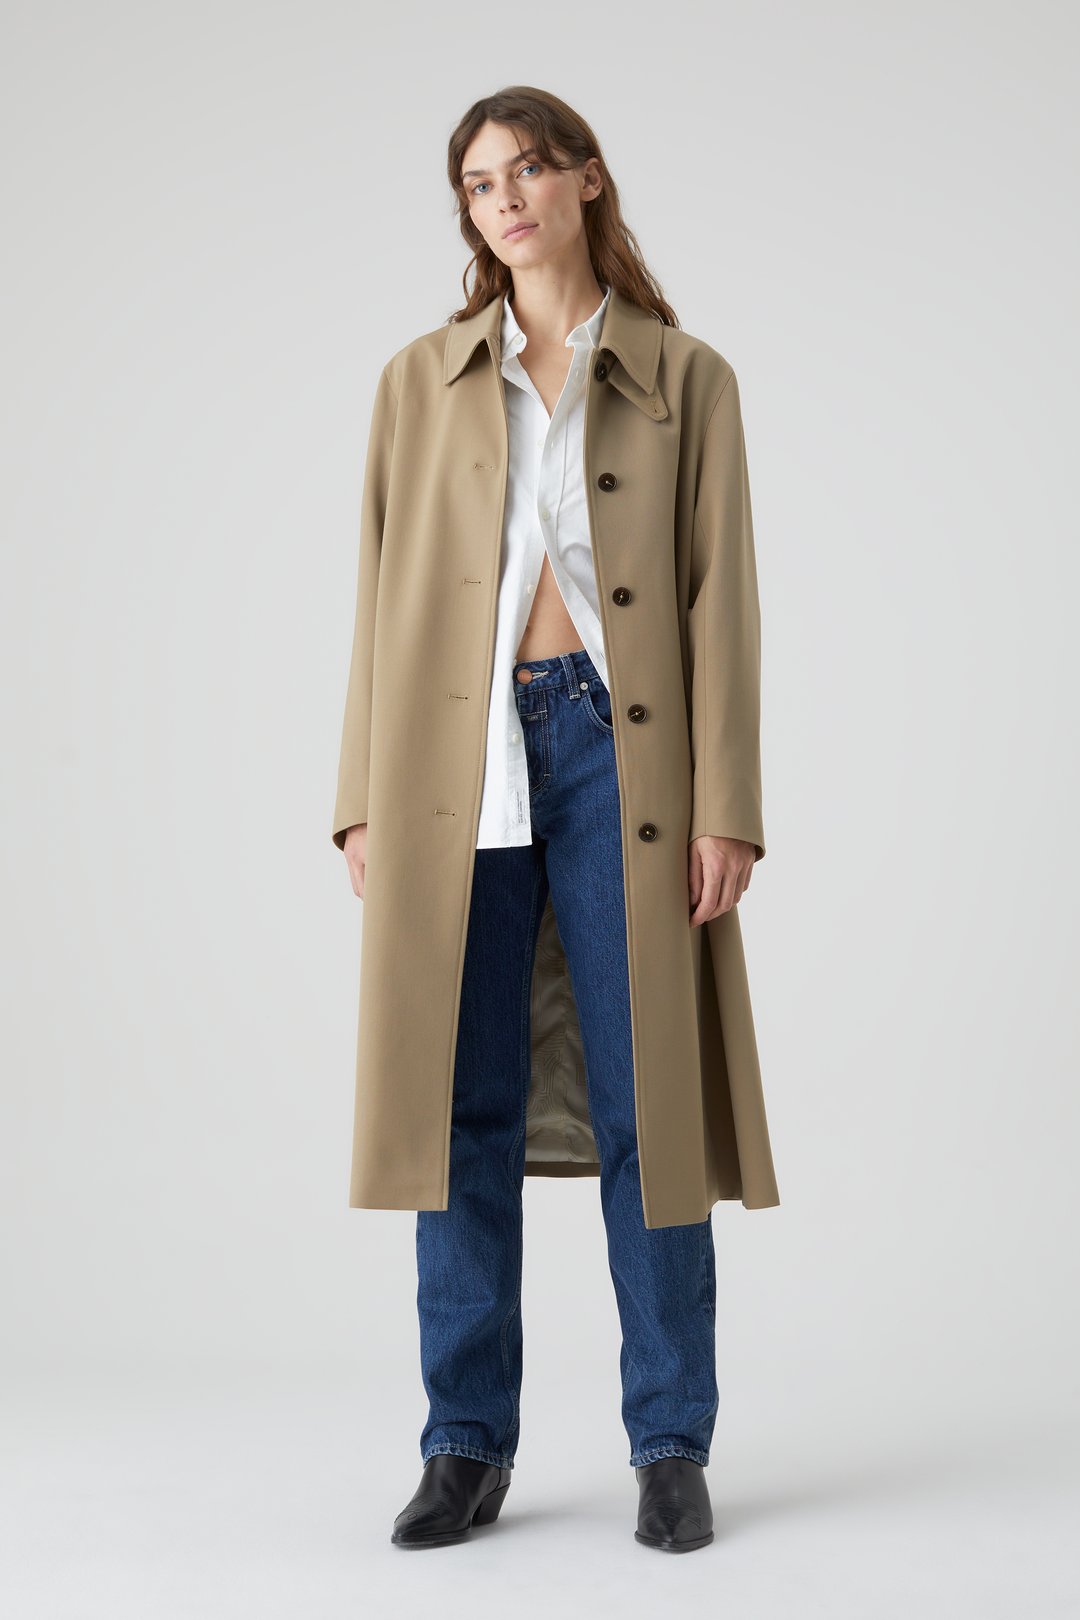 Black/Gray XL NoName Long coat discount 76% WOMEN FASHION Coats Combined 